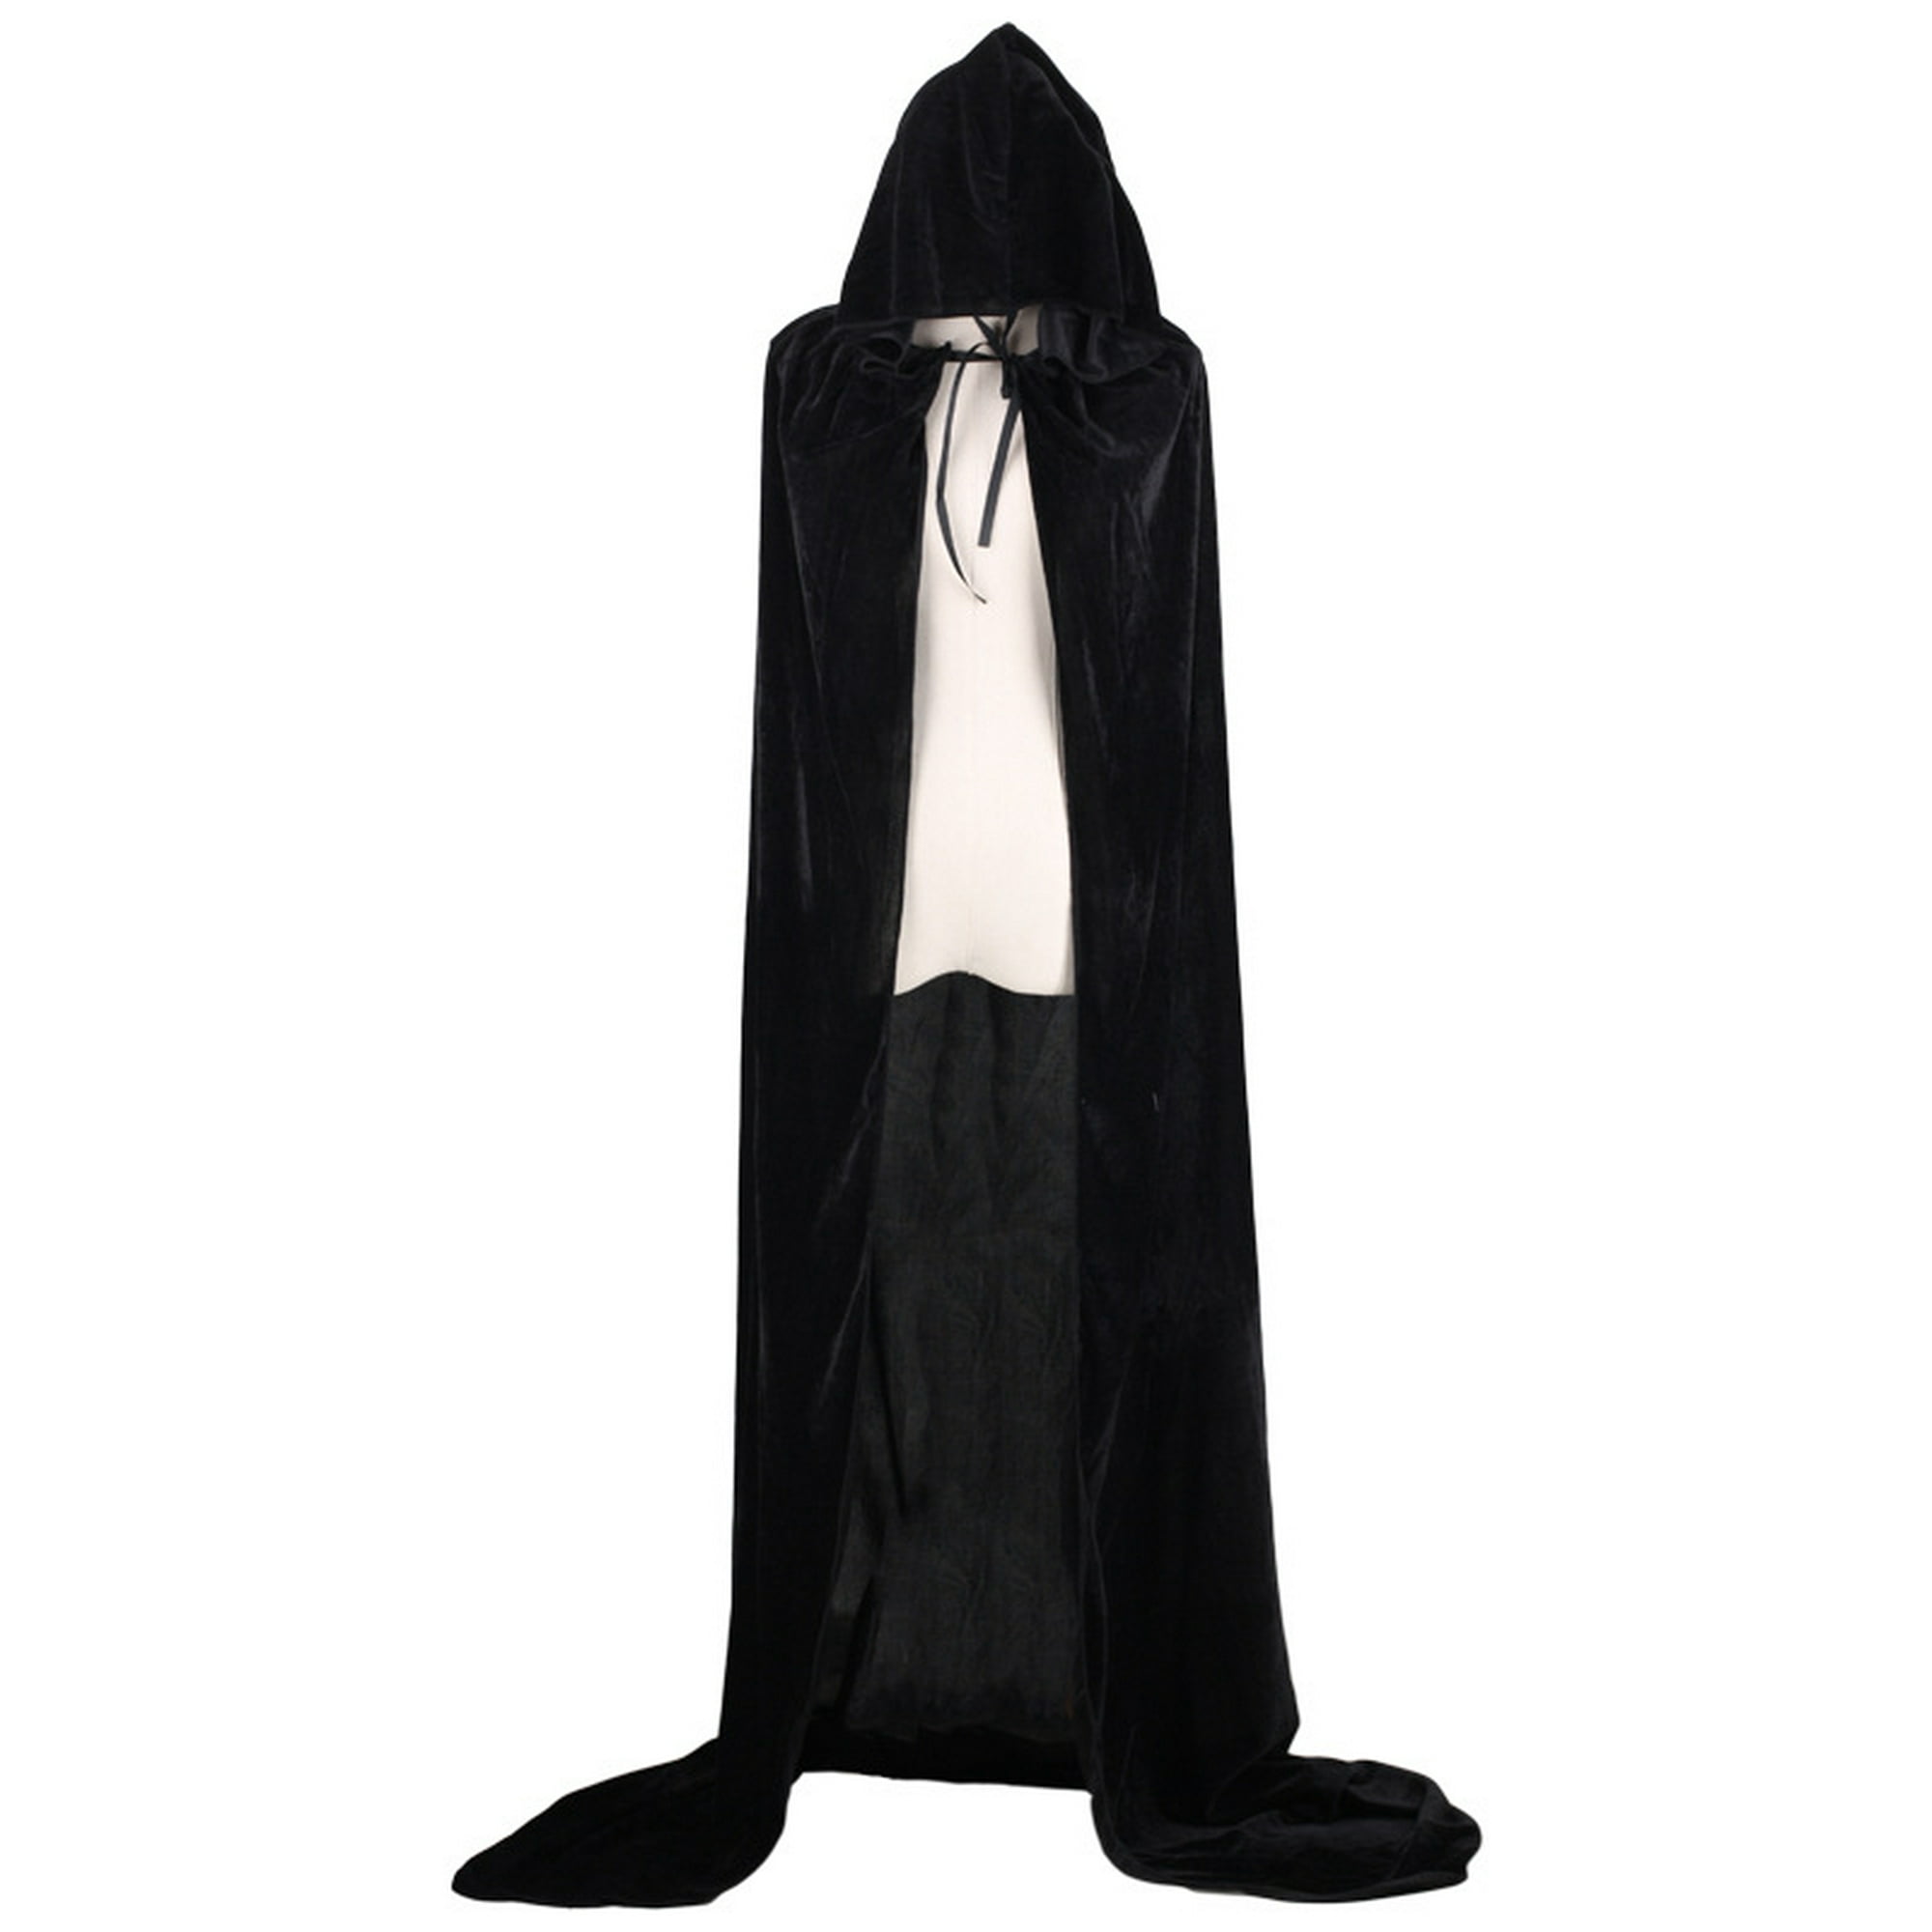 Accesorio de disfraz de capa negra de longitud completa, tamaño estándar  (paquete de 1), elegante y misteriosa cortina de tela para disfraces y